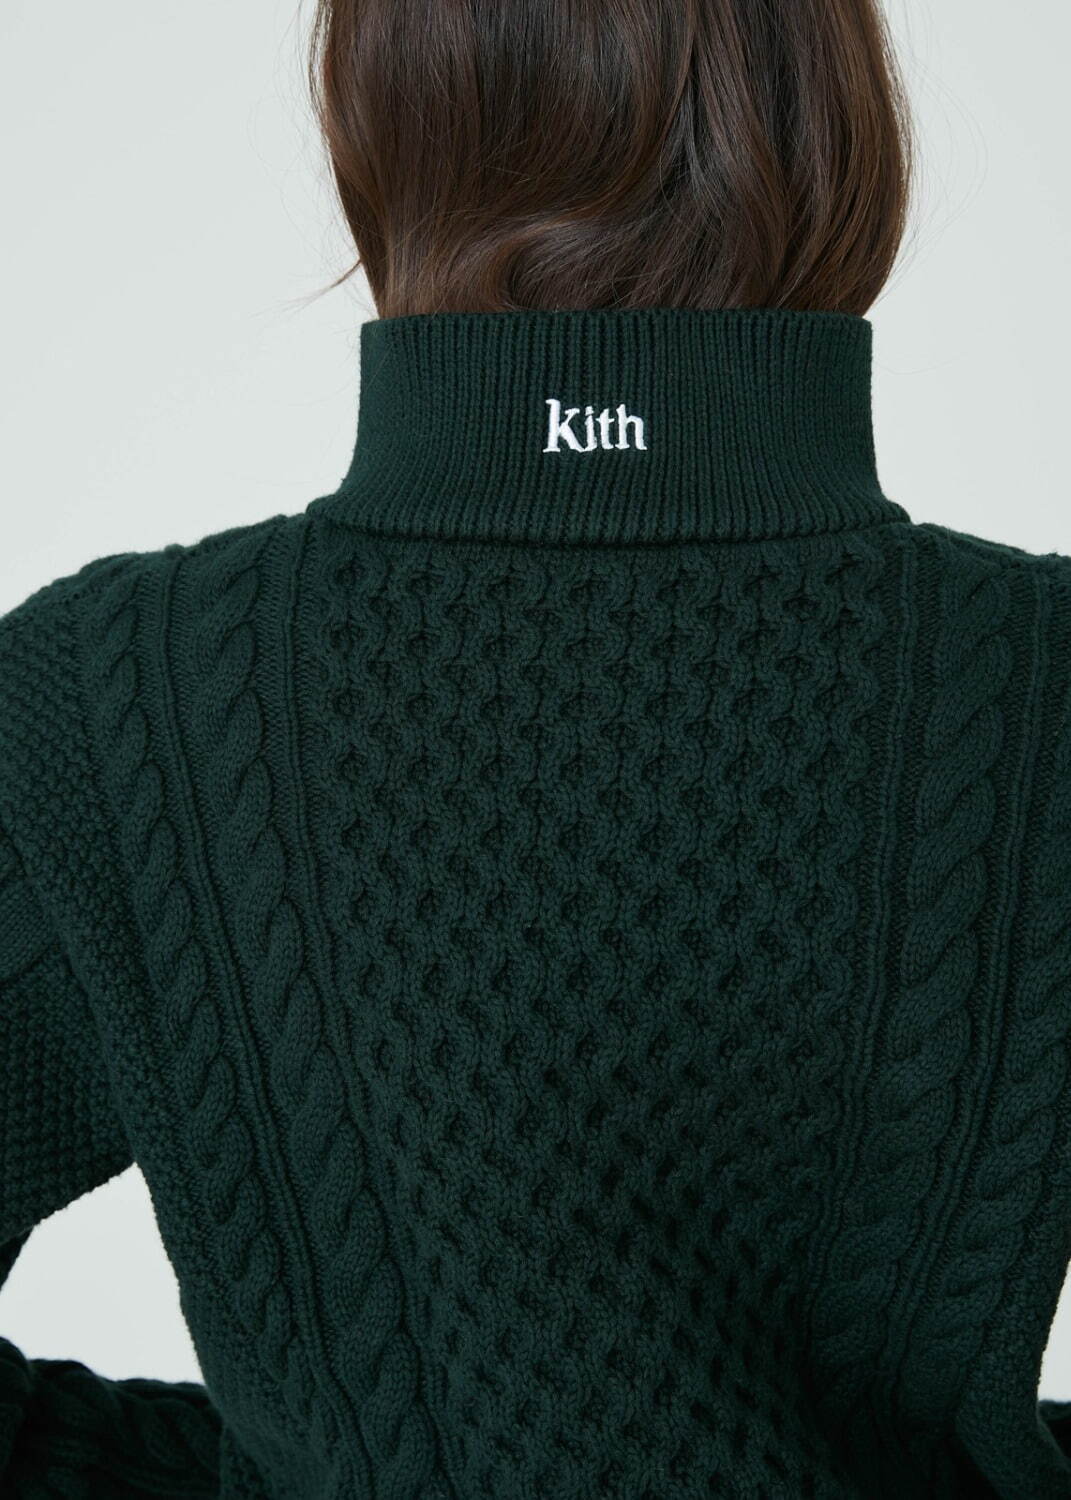 キス(Kith) 2021年冬ウィメンズコレクション  - 写真100